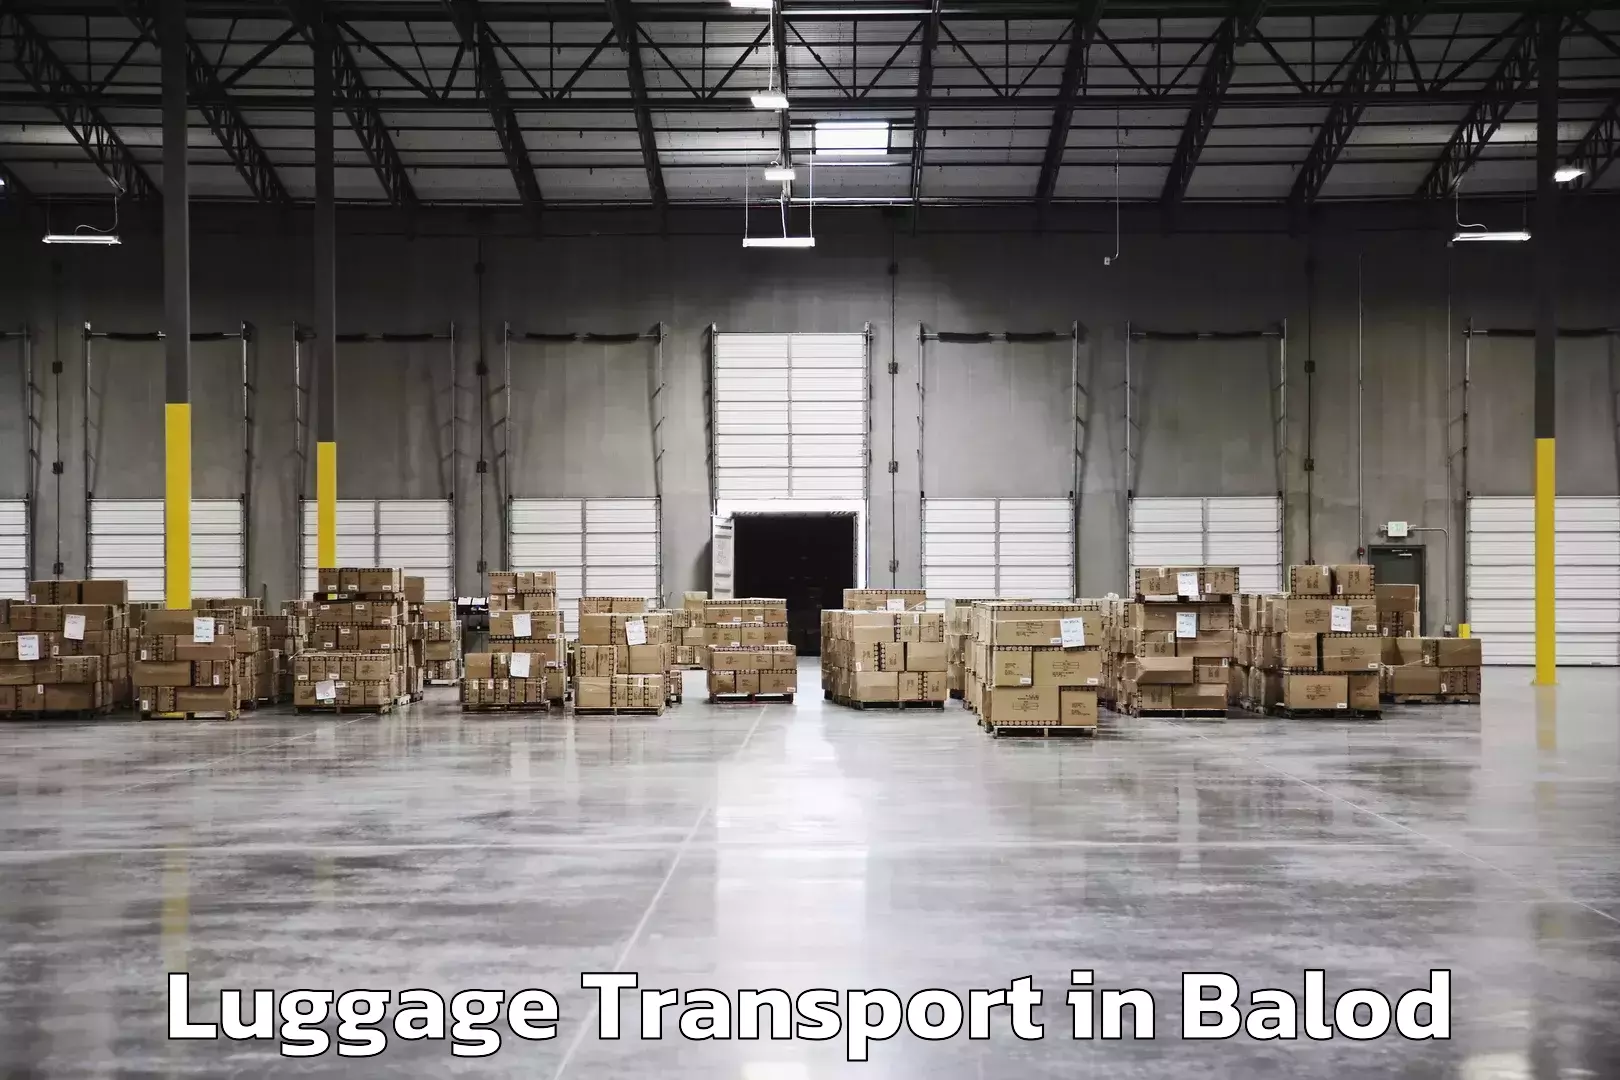 Rural baggage transport in Balod